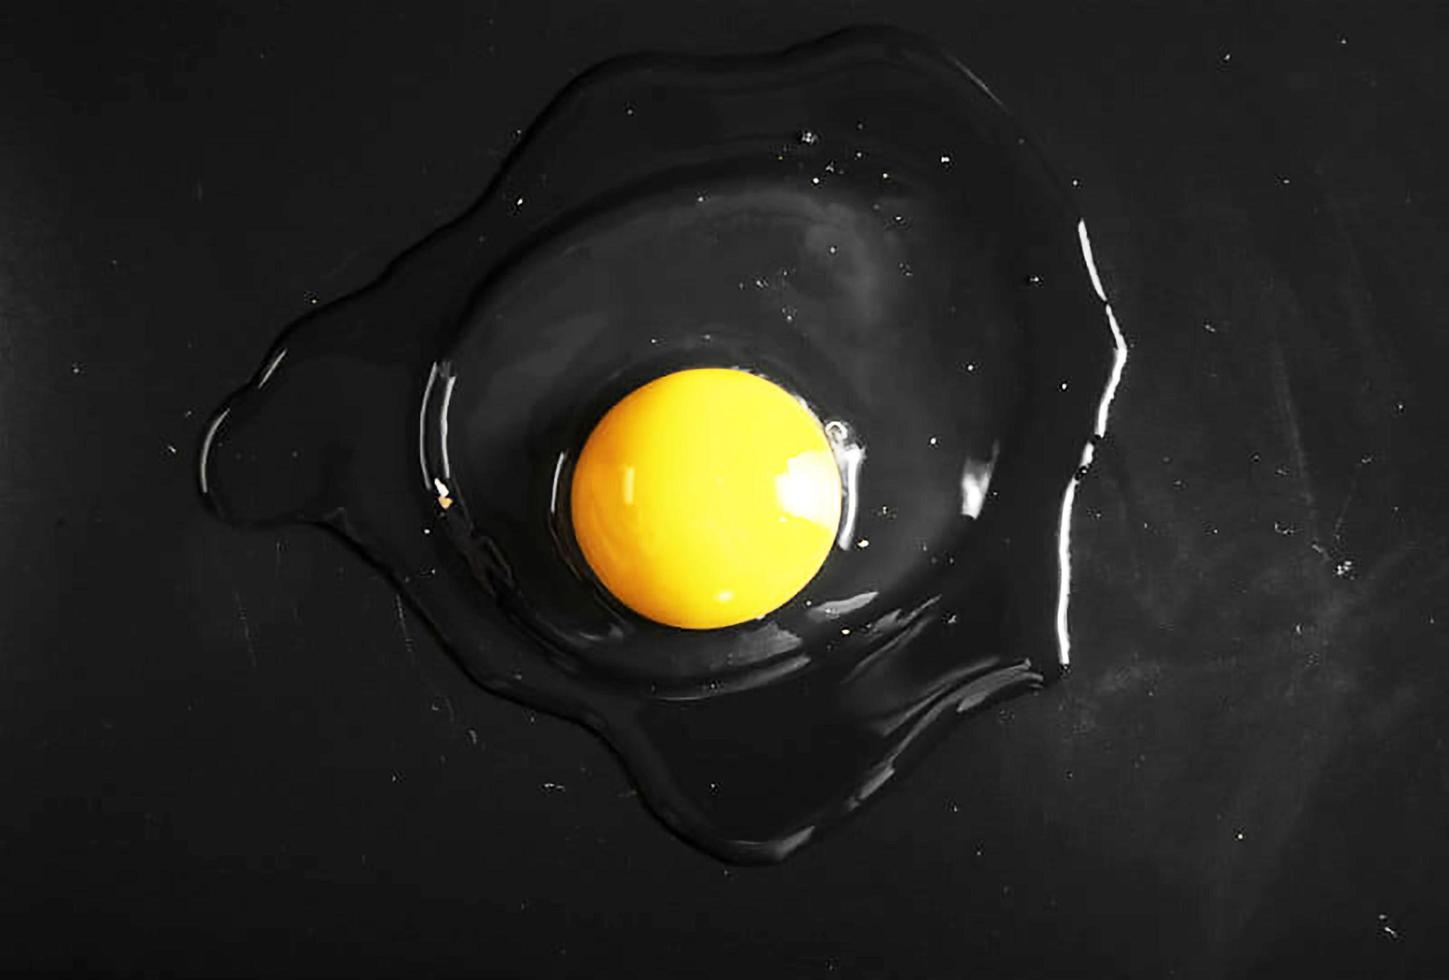 Chicken egg broken on a dark stone photo